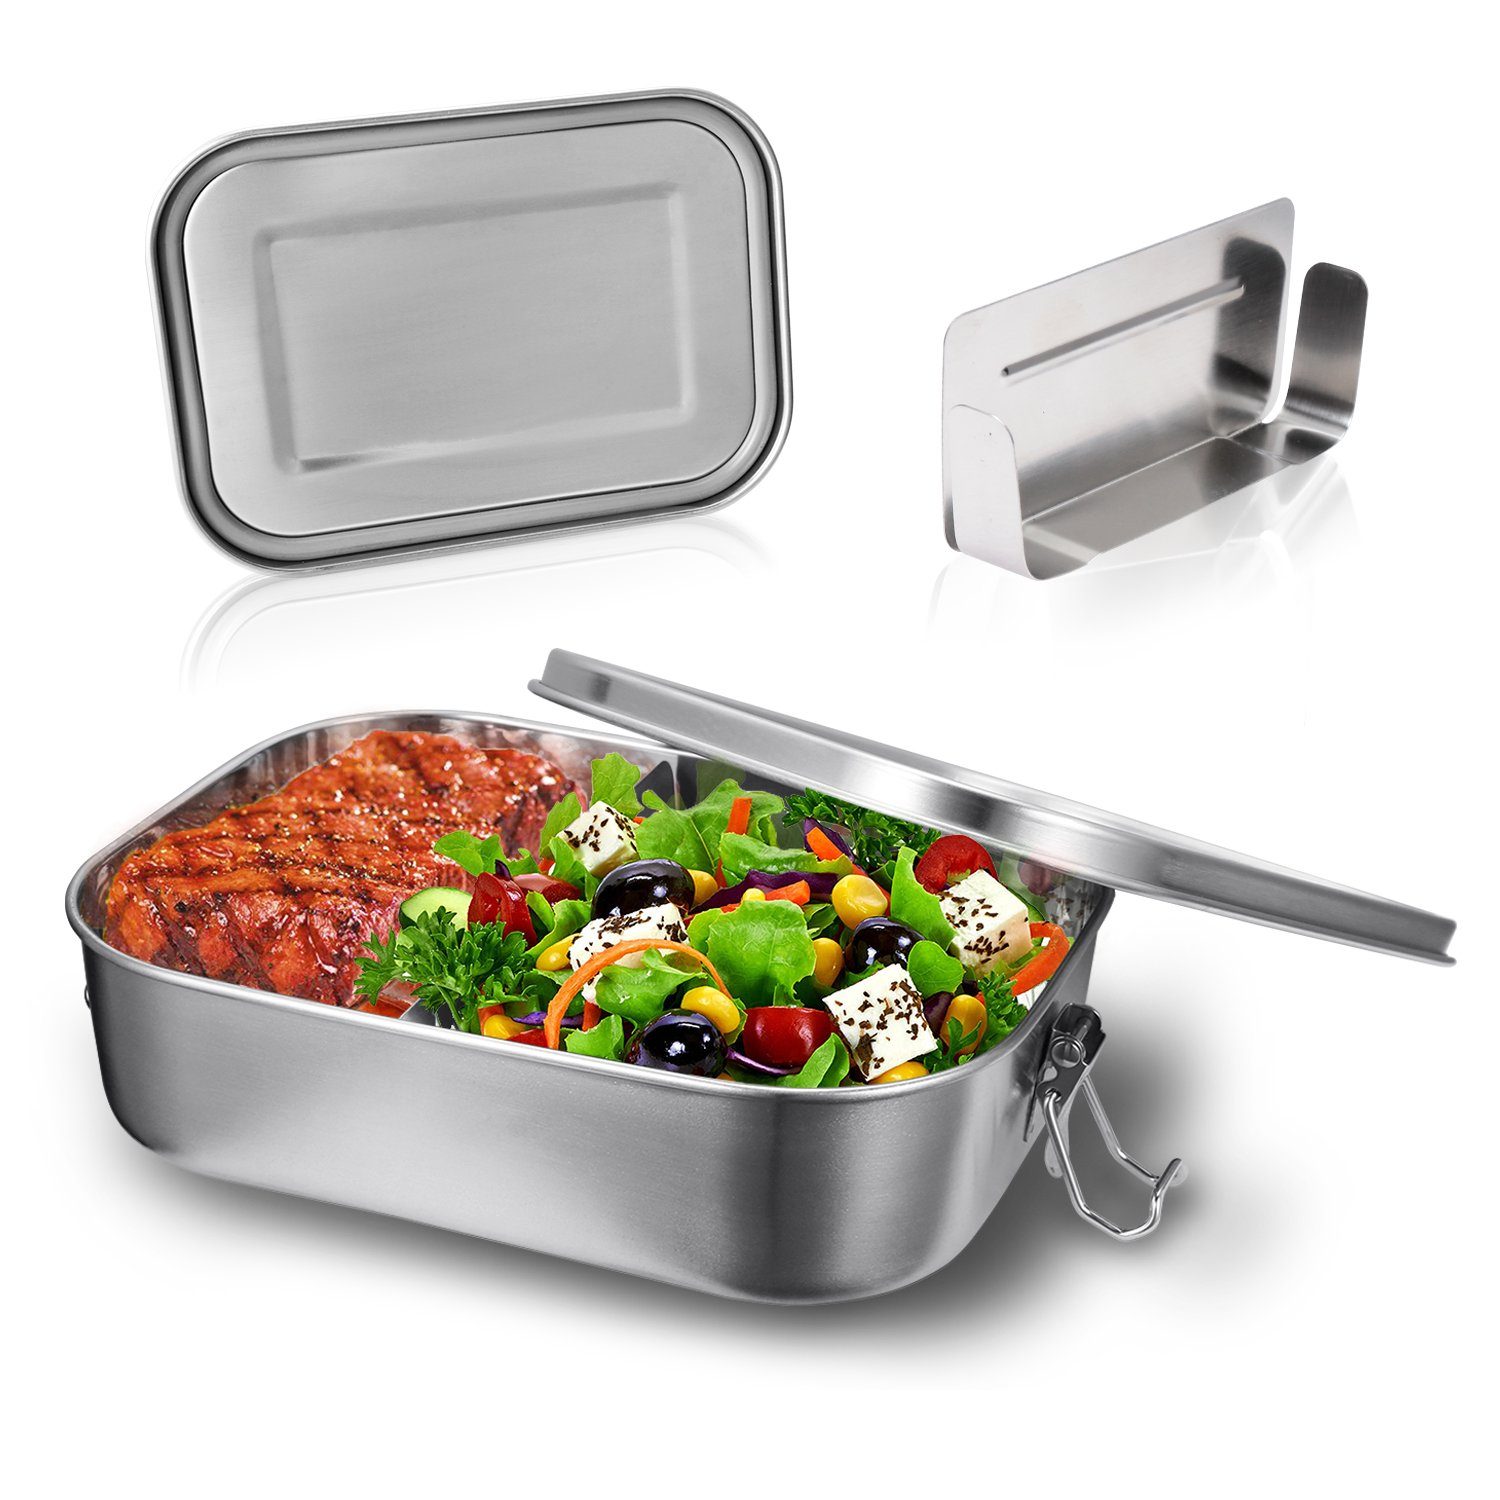 Lunchbox Lunchbox Büro - Nachhaltige TolleTour Silber Picknick Schule Edelstahl für Brotdose 800ml